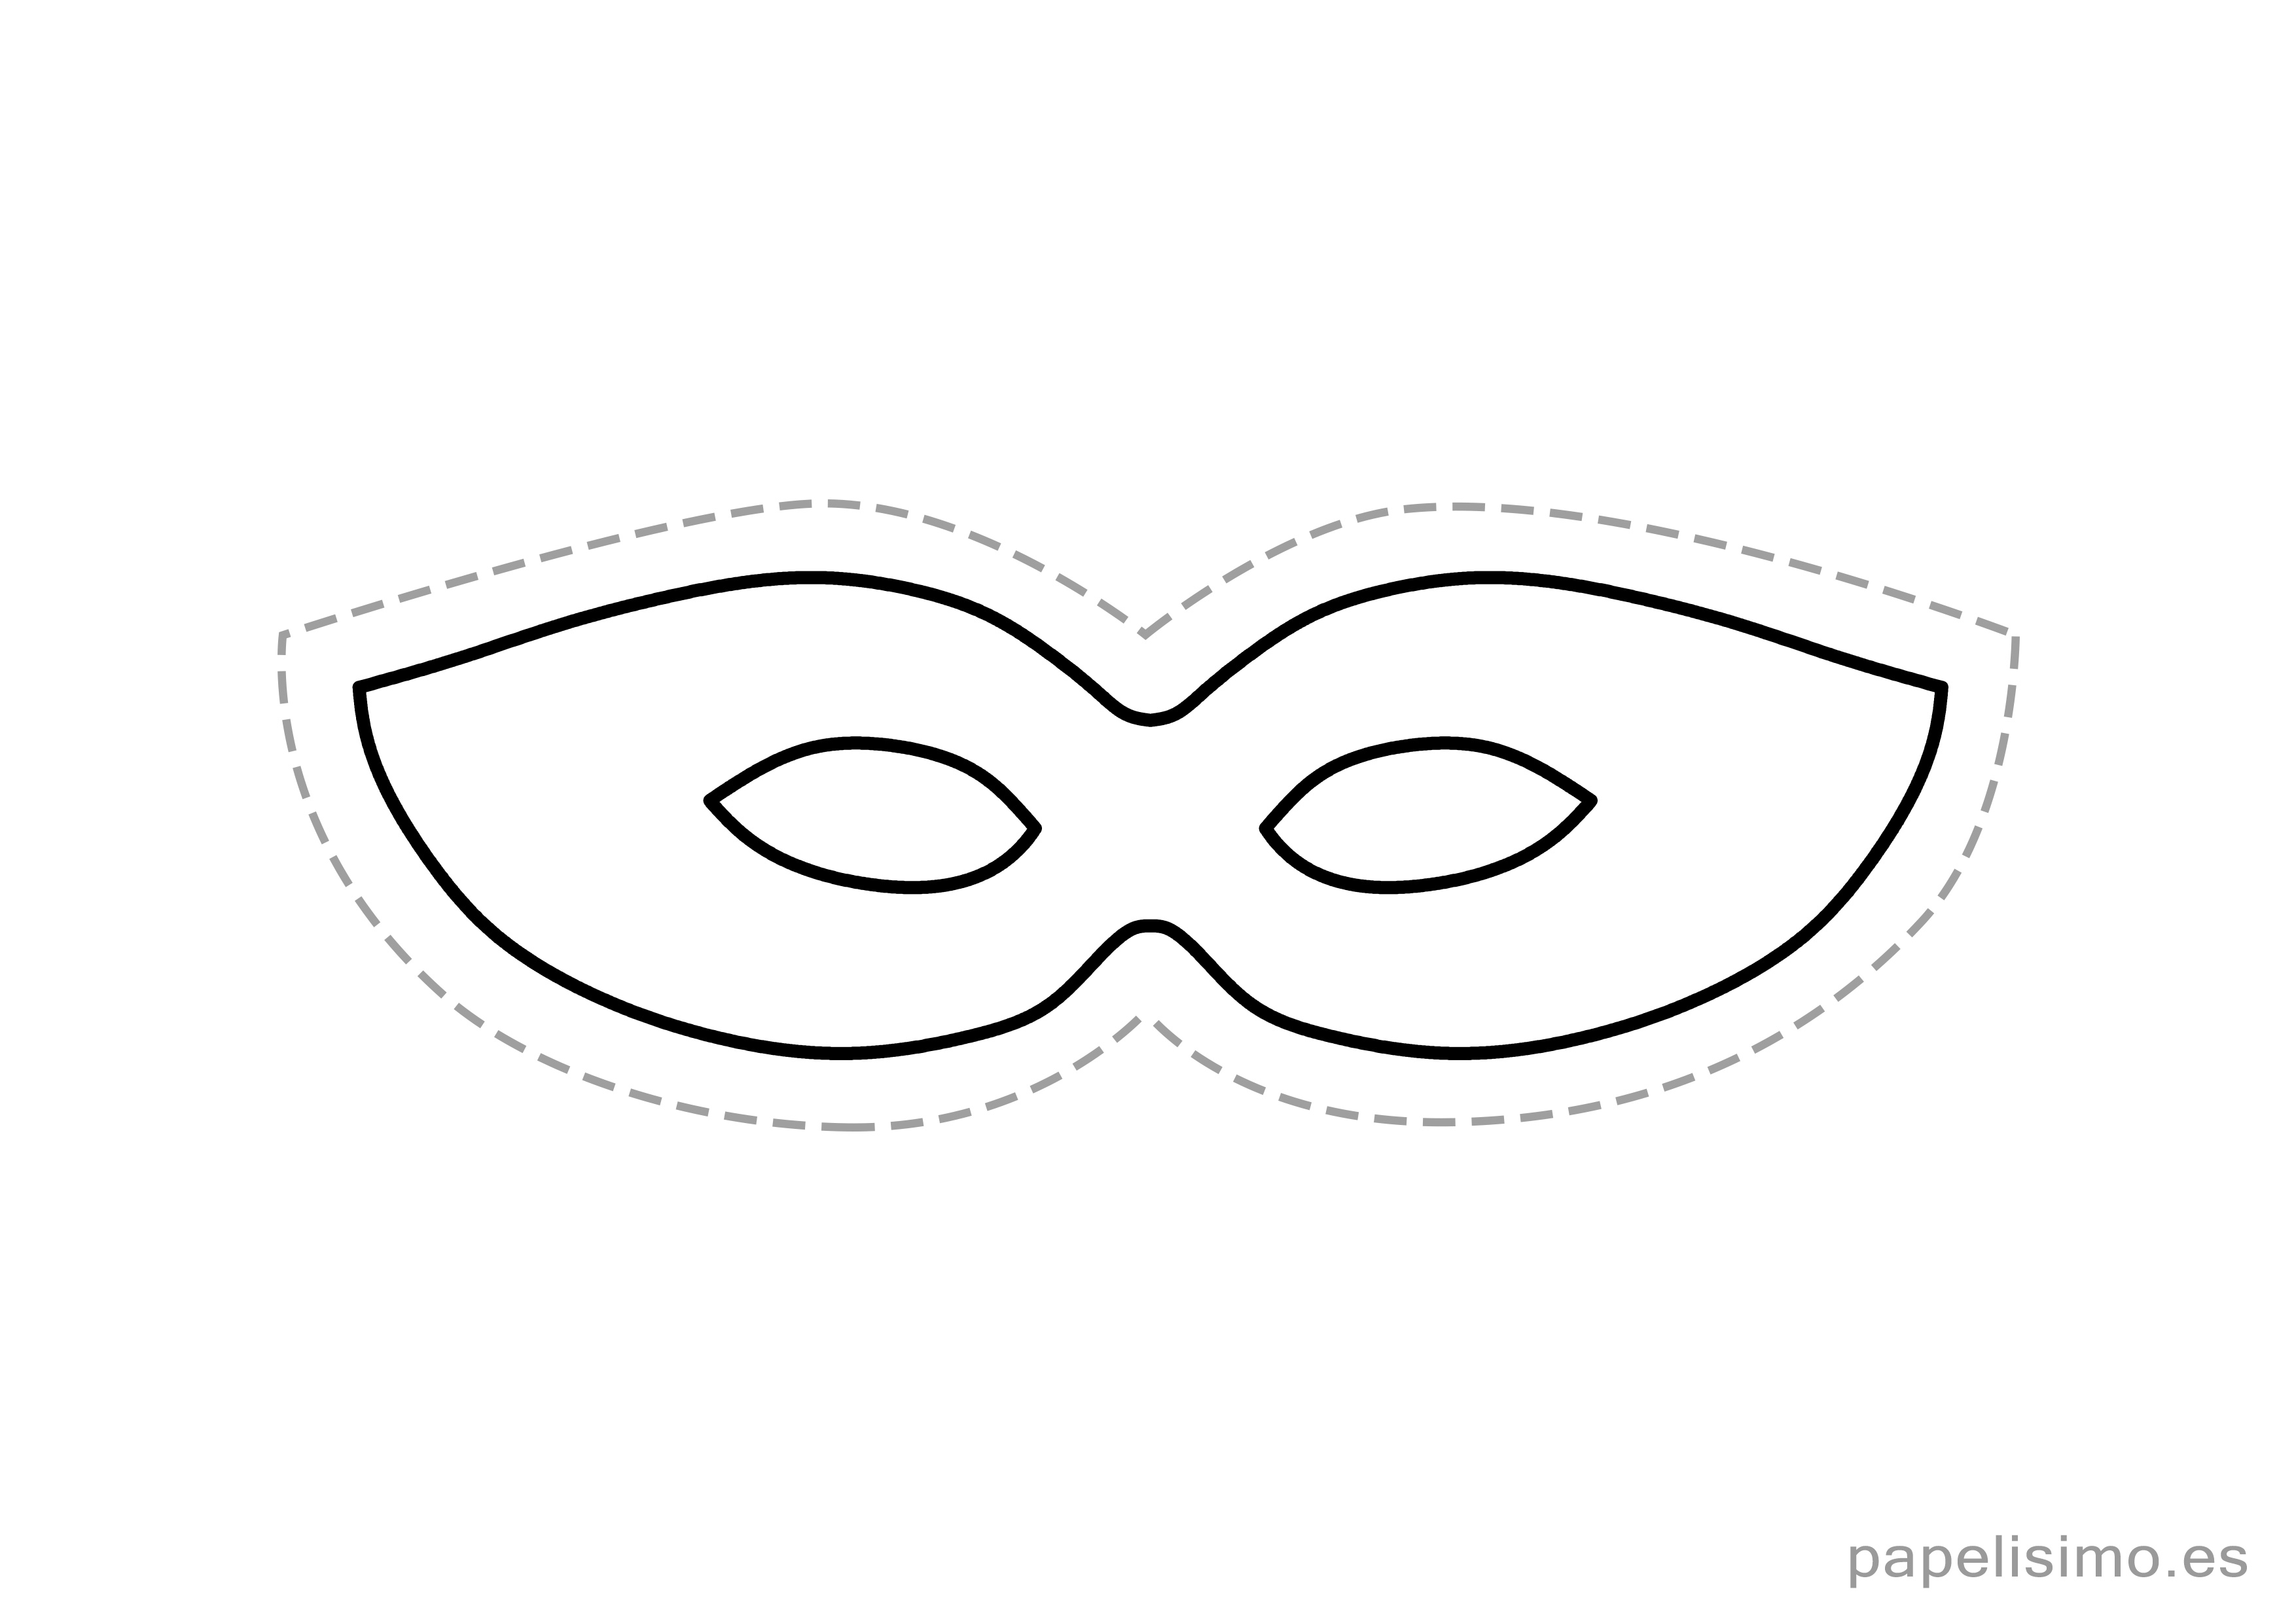 Máscaras Imprimibles de Superhéroes para Fiestas